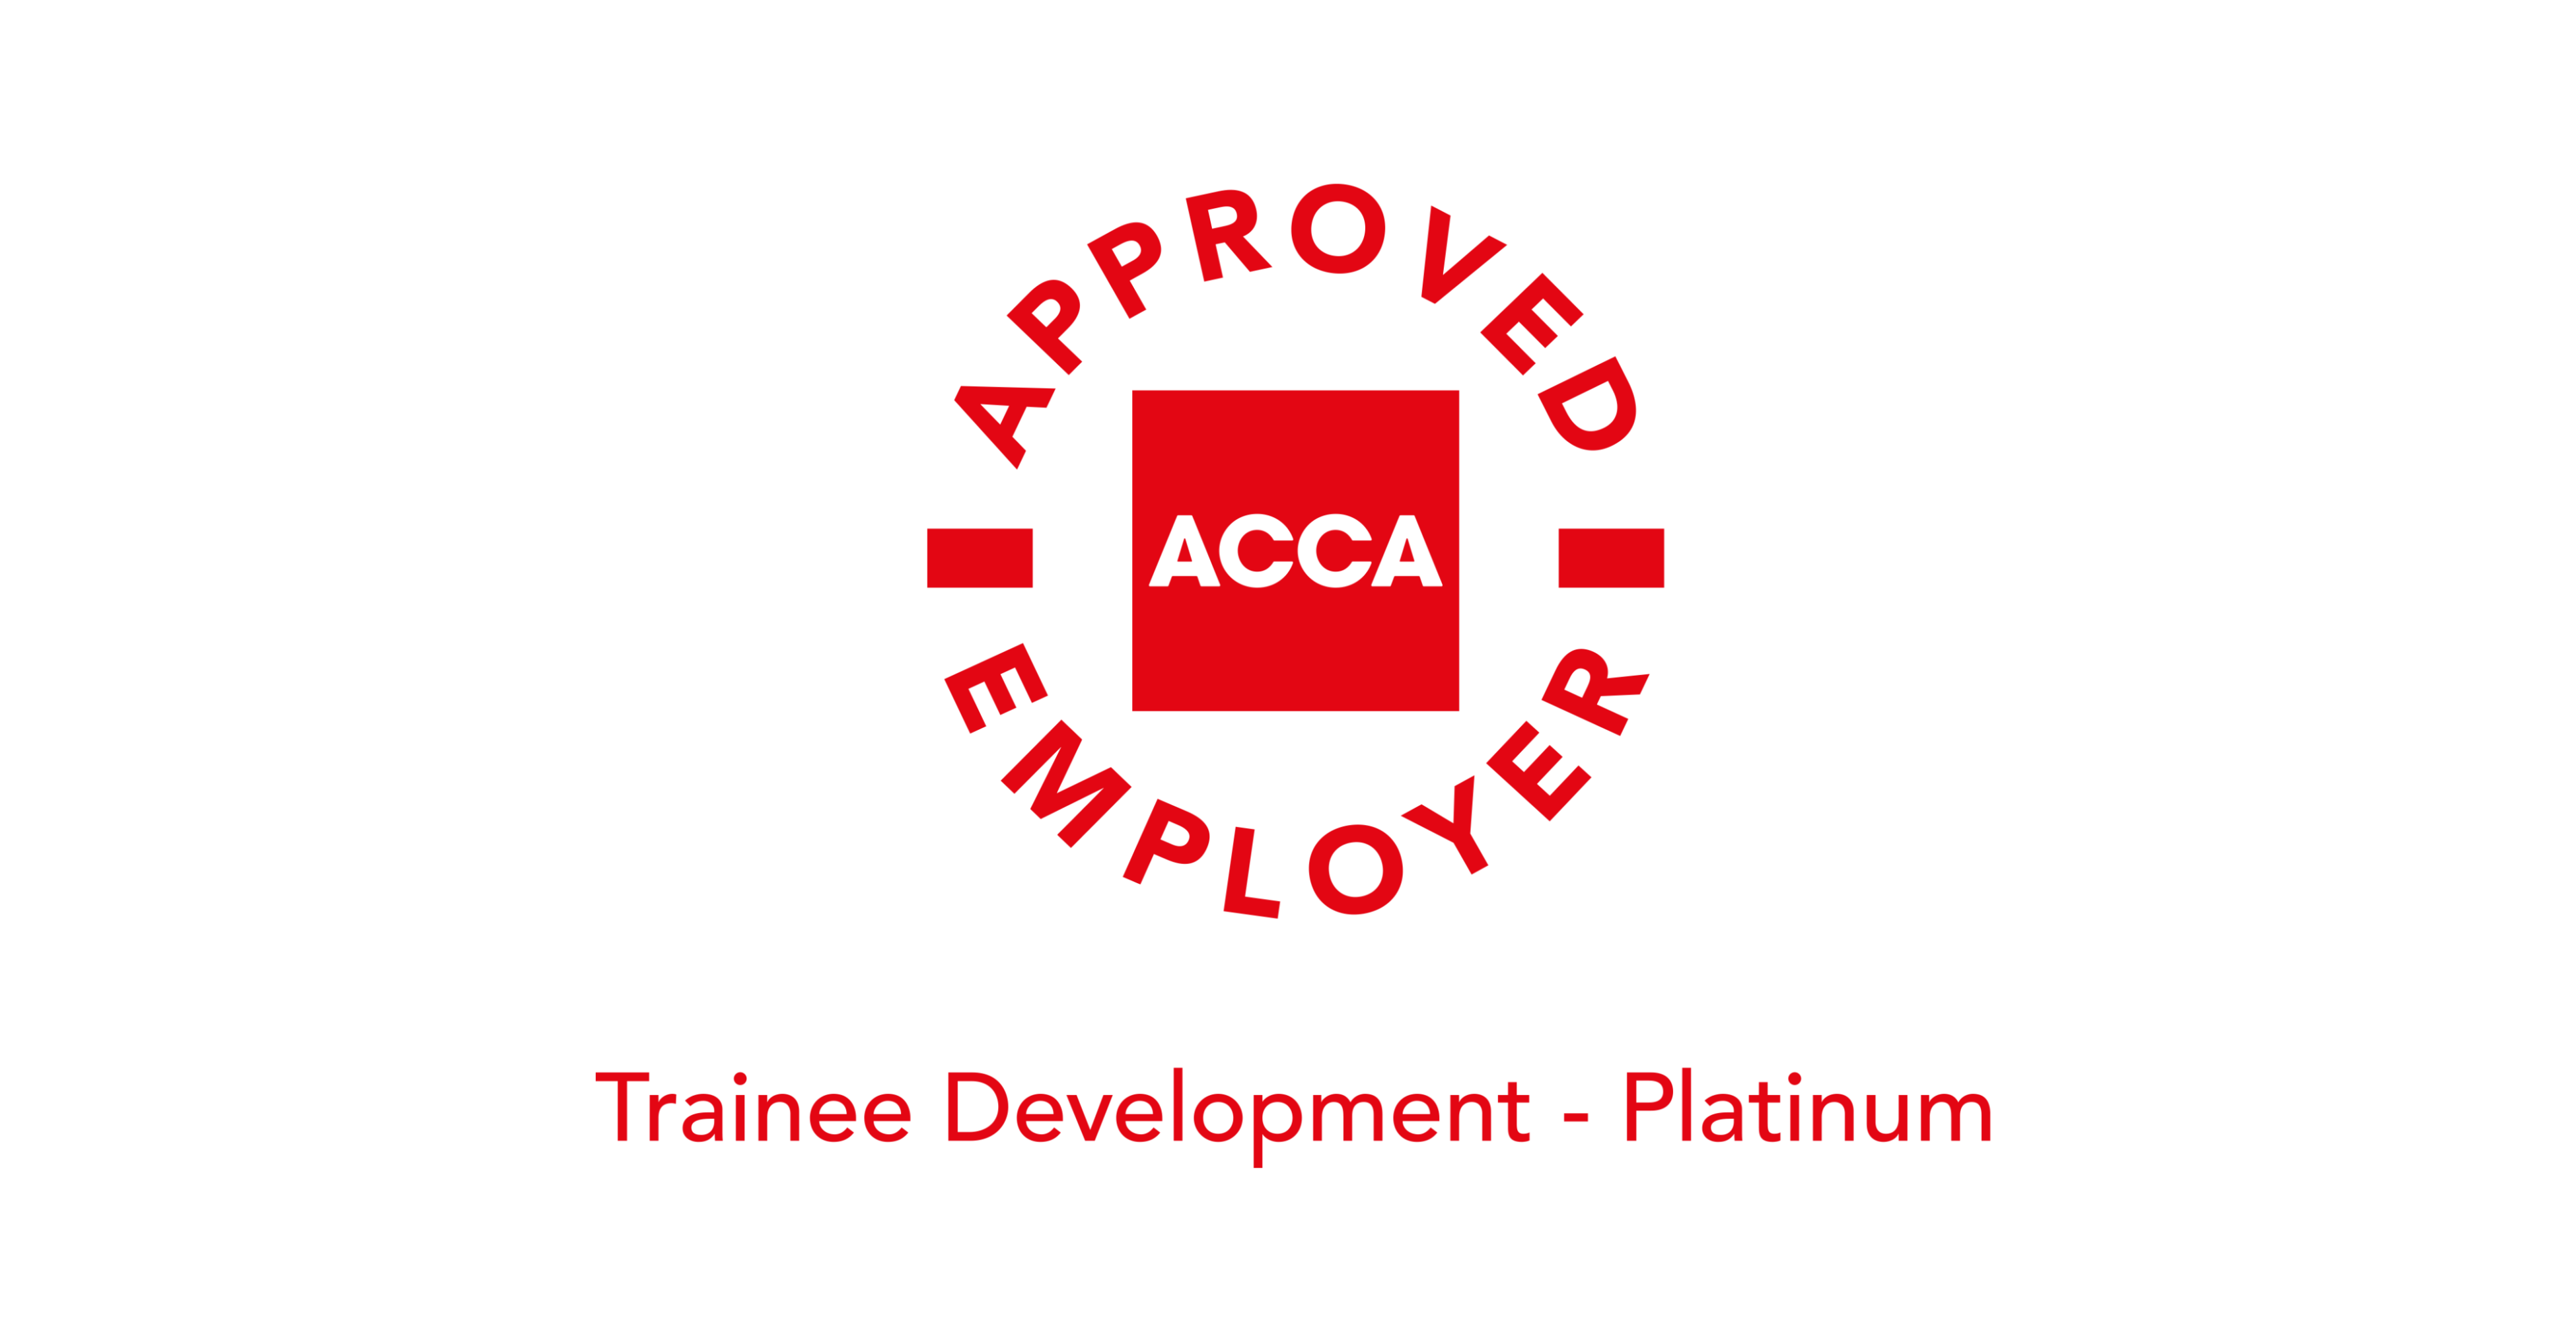 Όμιλος ΆΒΑΞ: Έλαβε την πιστοποίηση ACCA Approved Employer